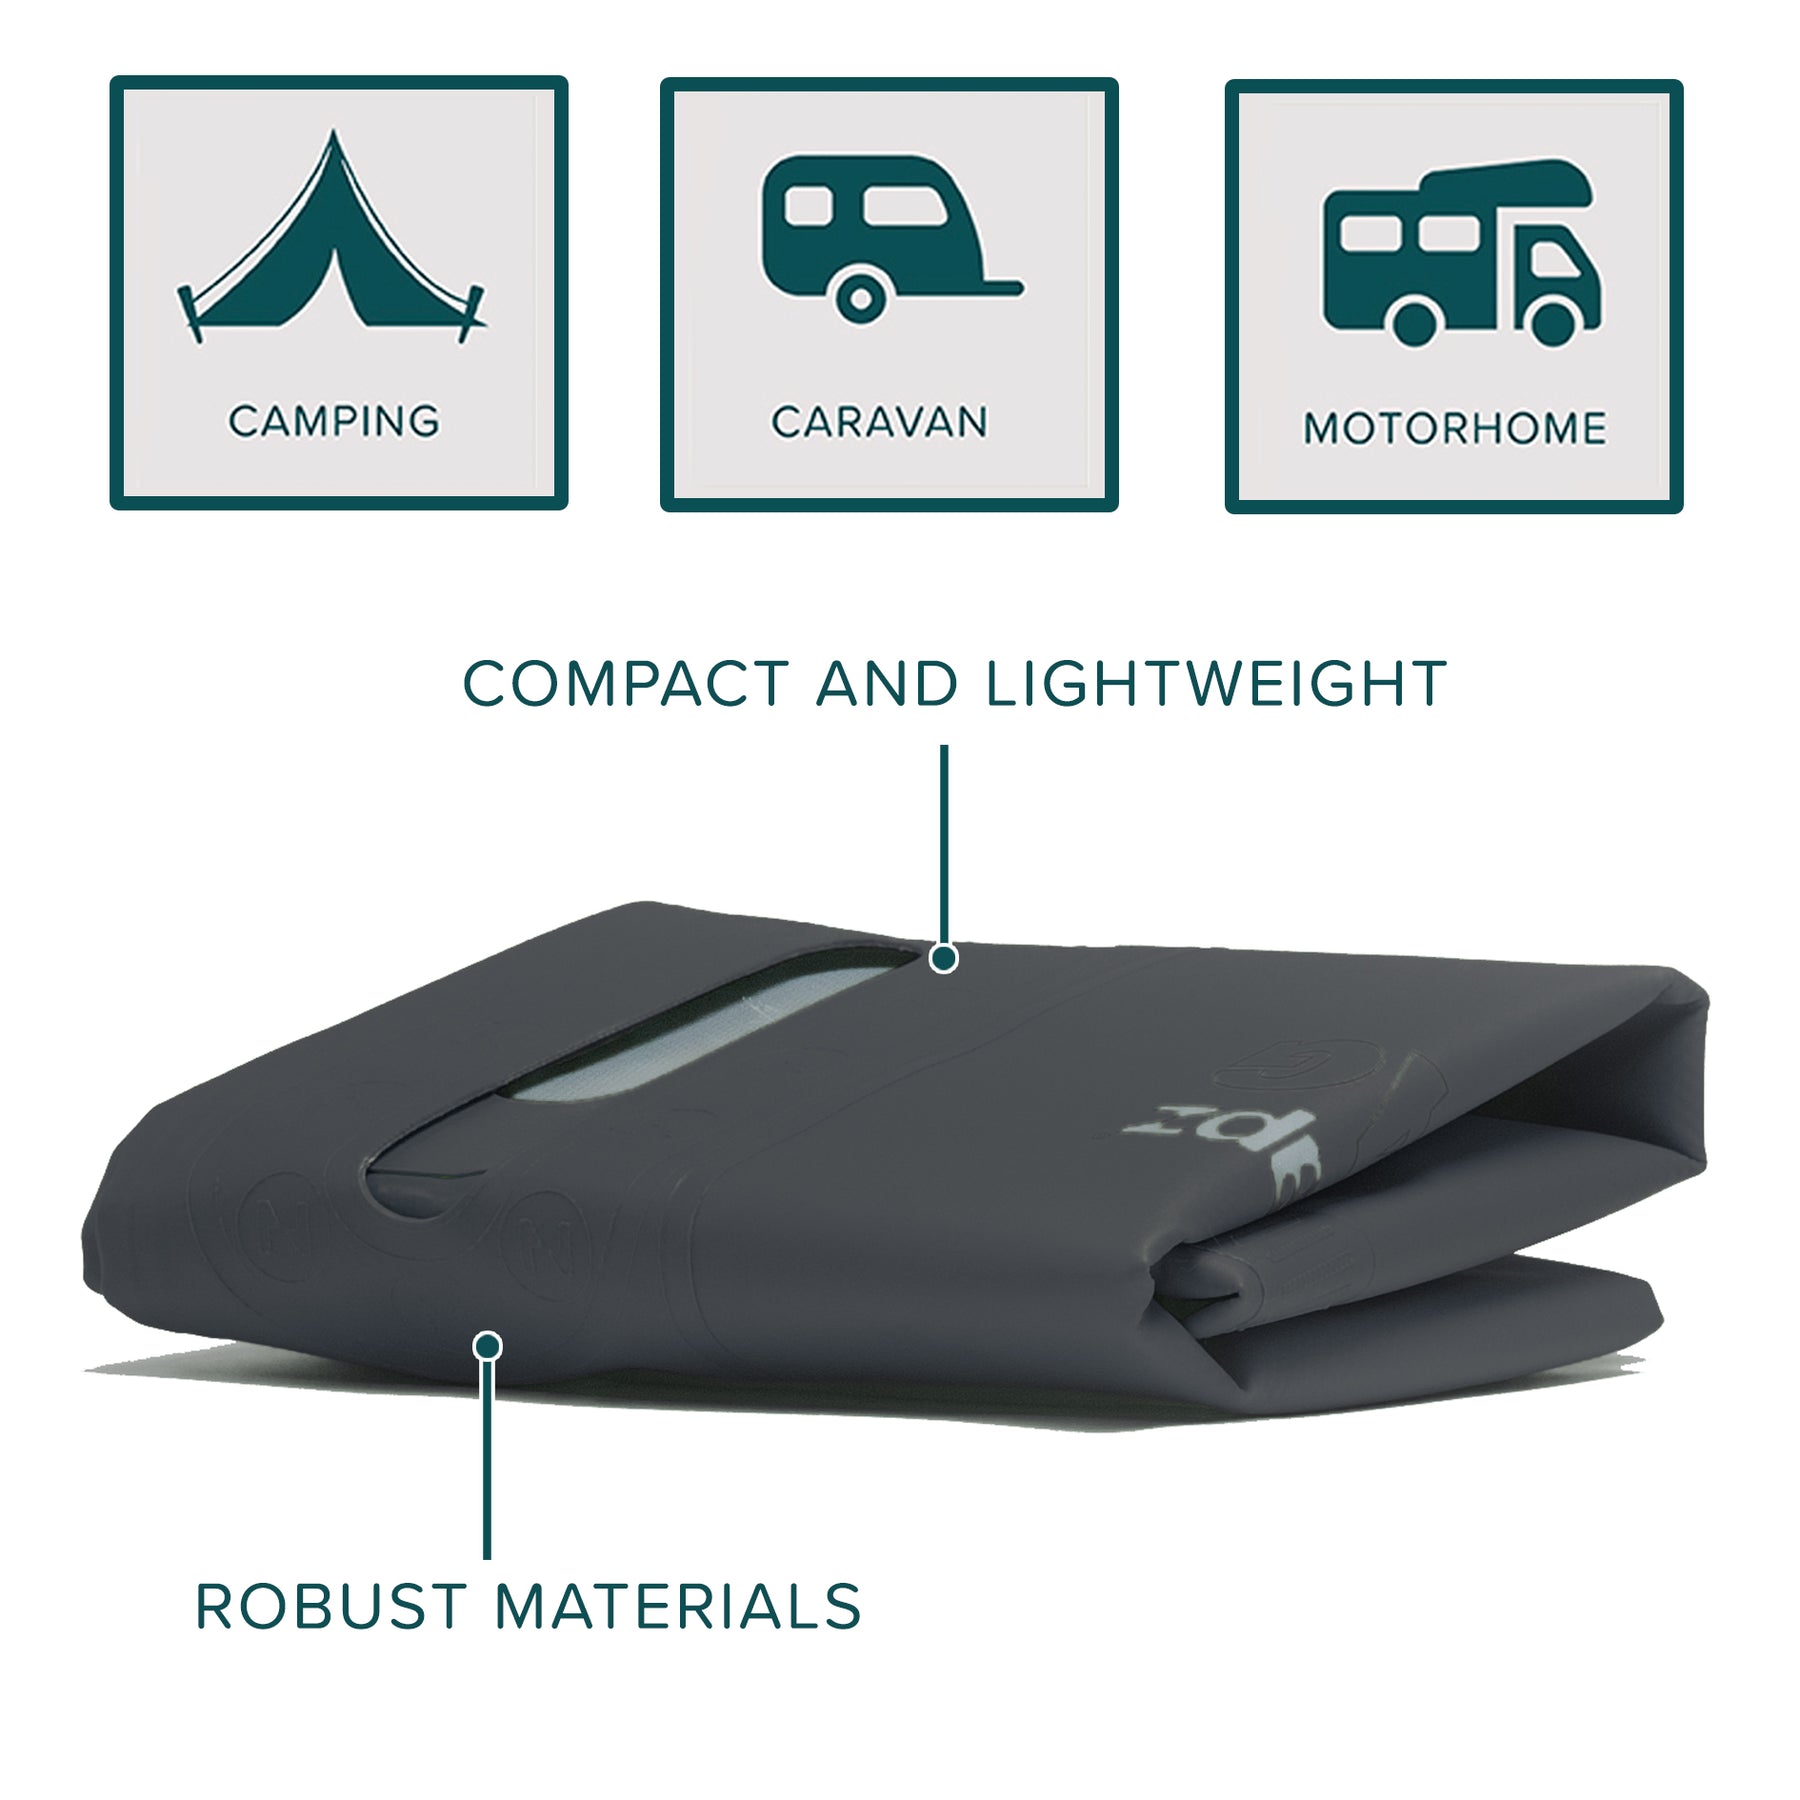 Colapz 12v Portable Camping Shower Kit (9.2G) – Colapz USA